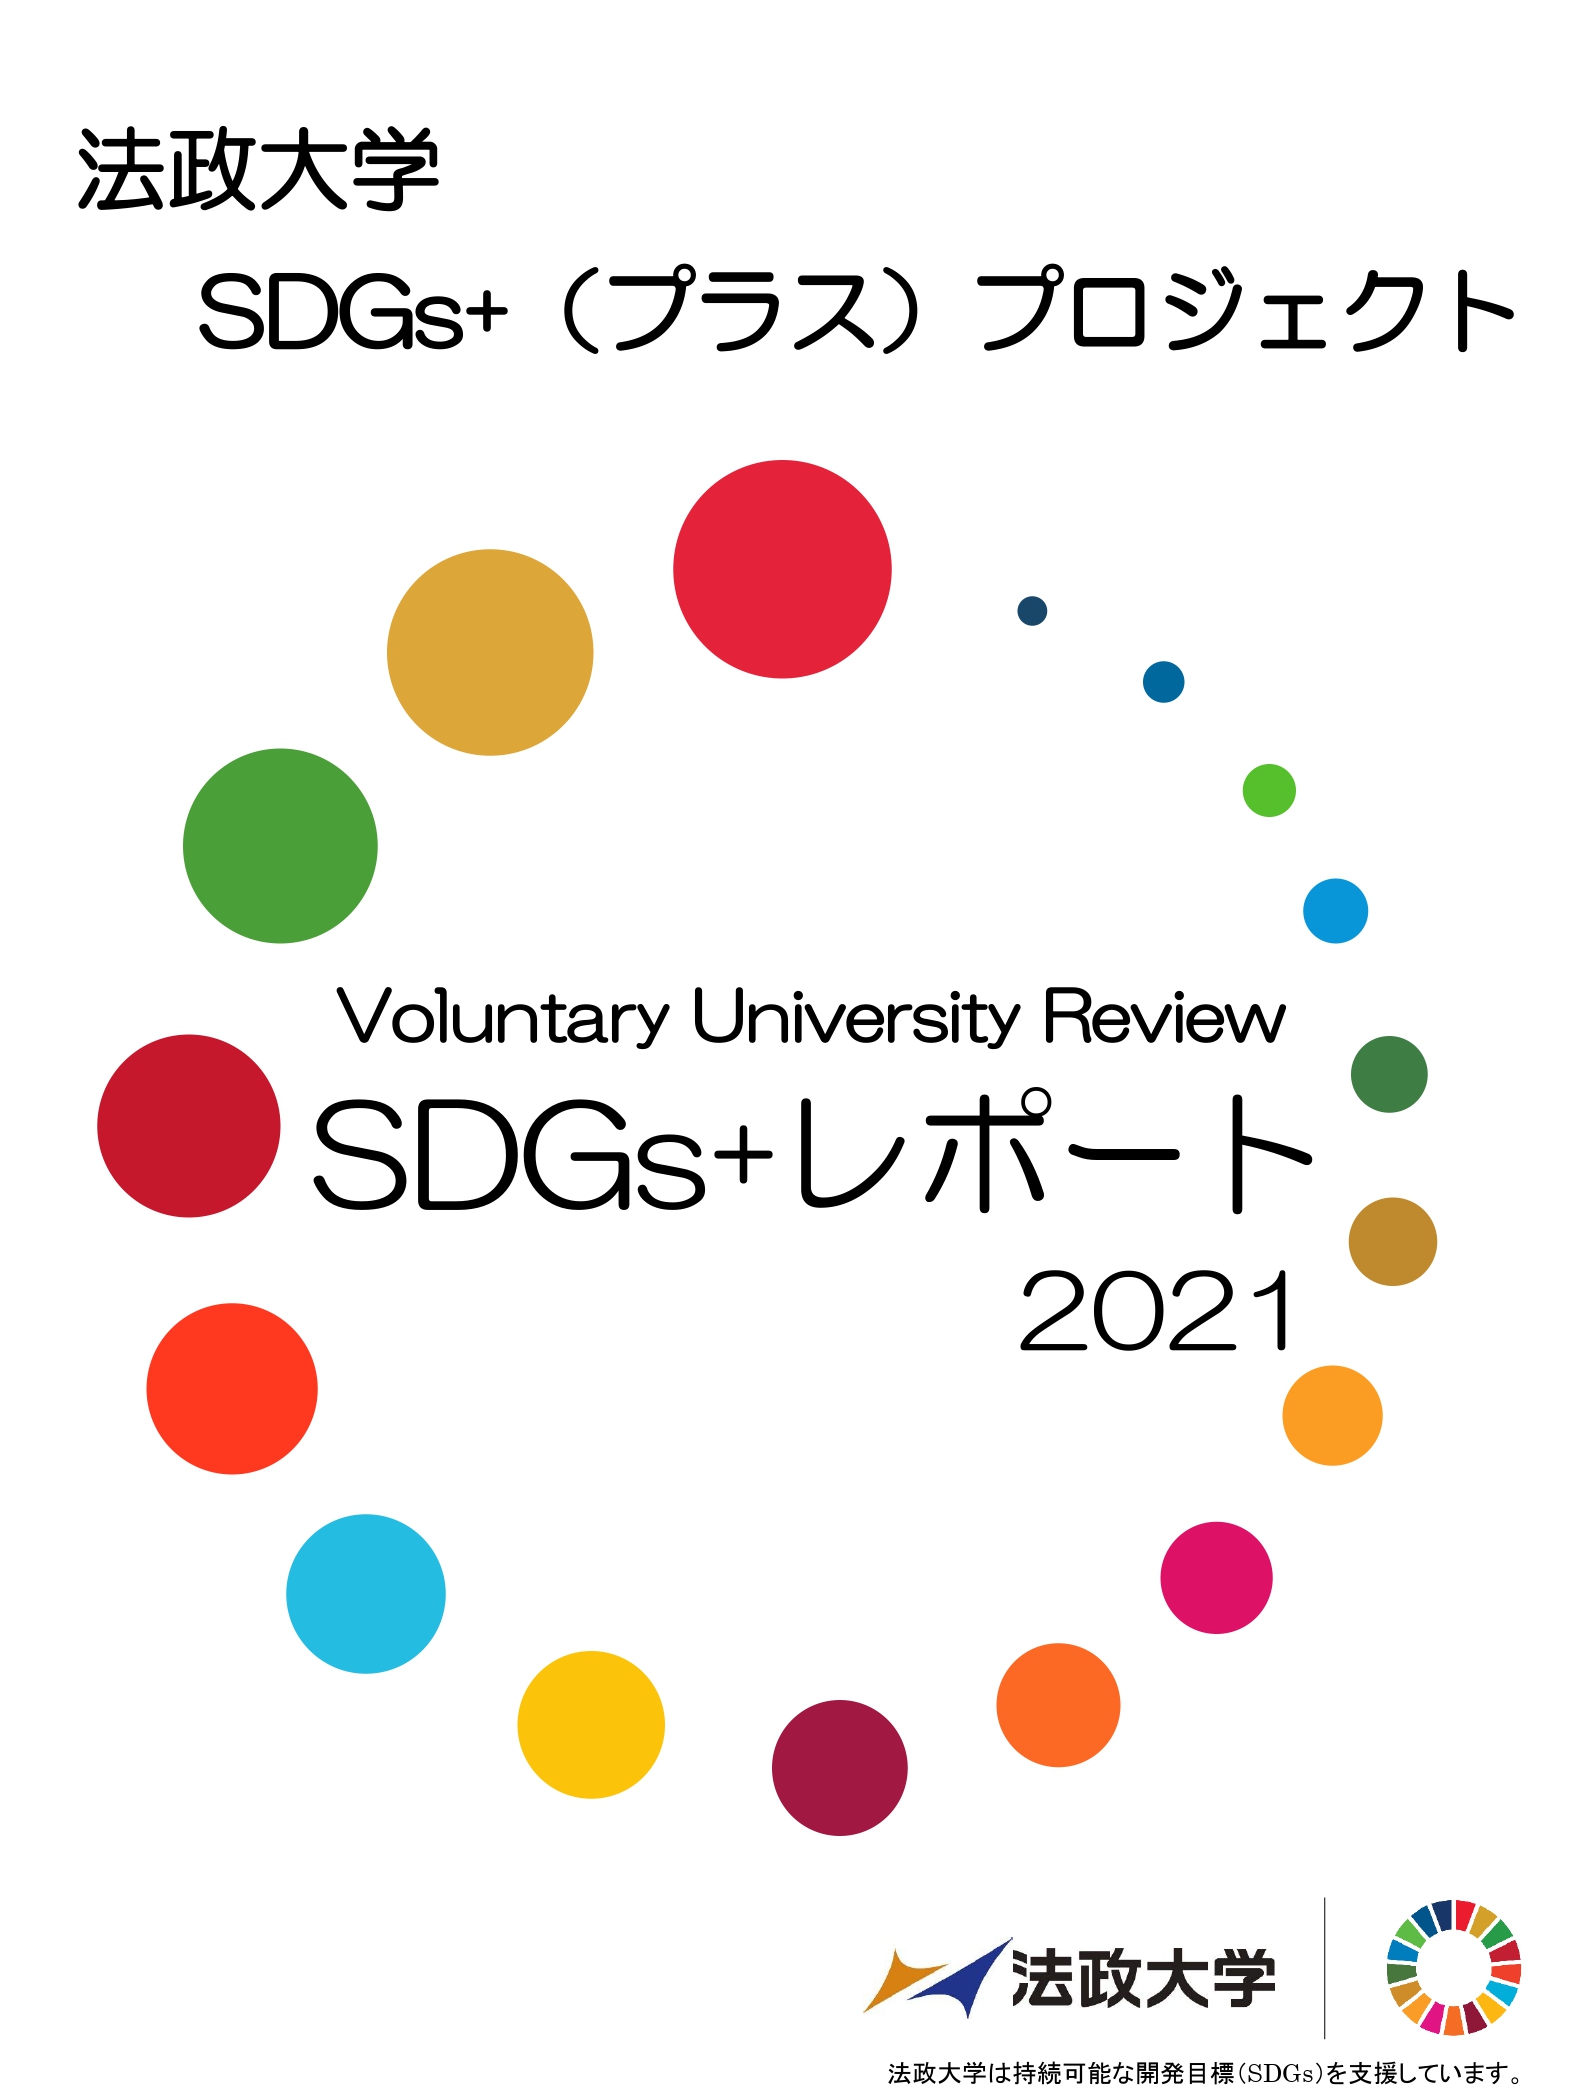 SDGs+レポート（案）_page-0001.jpg